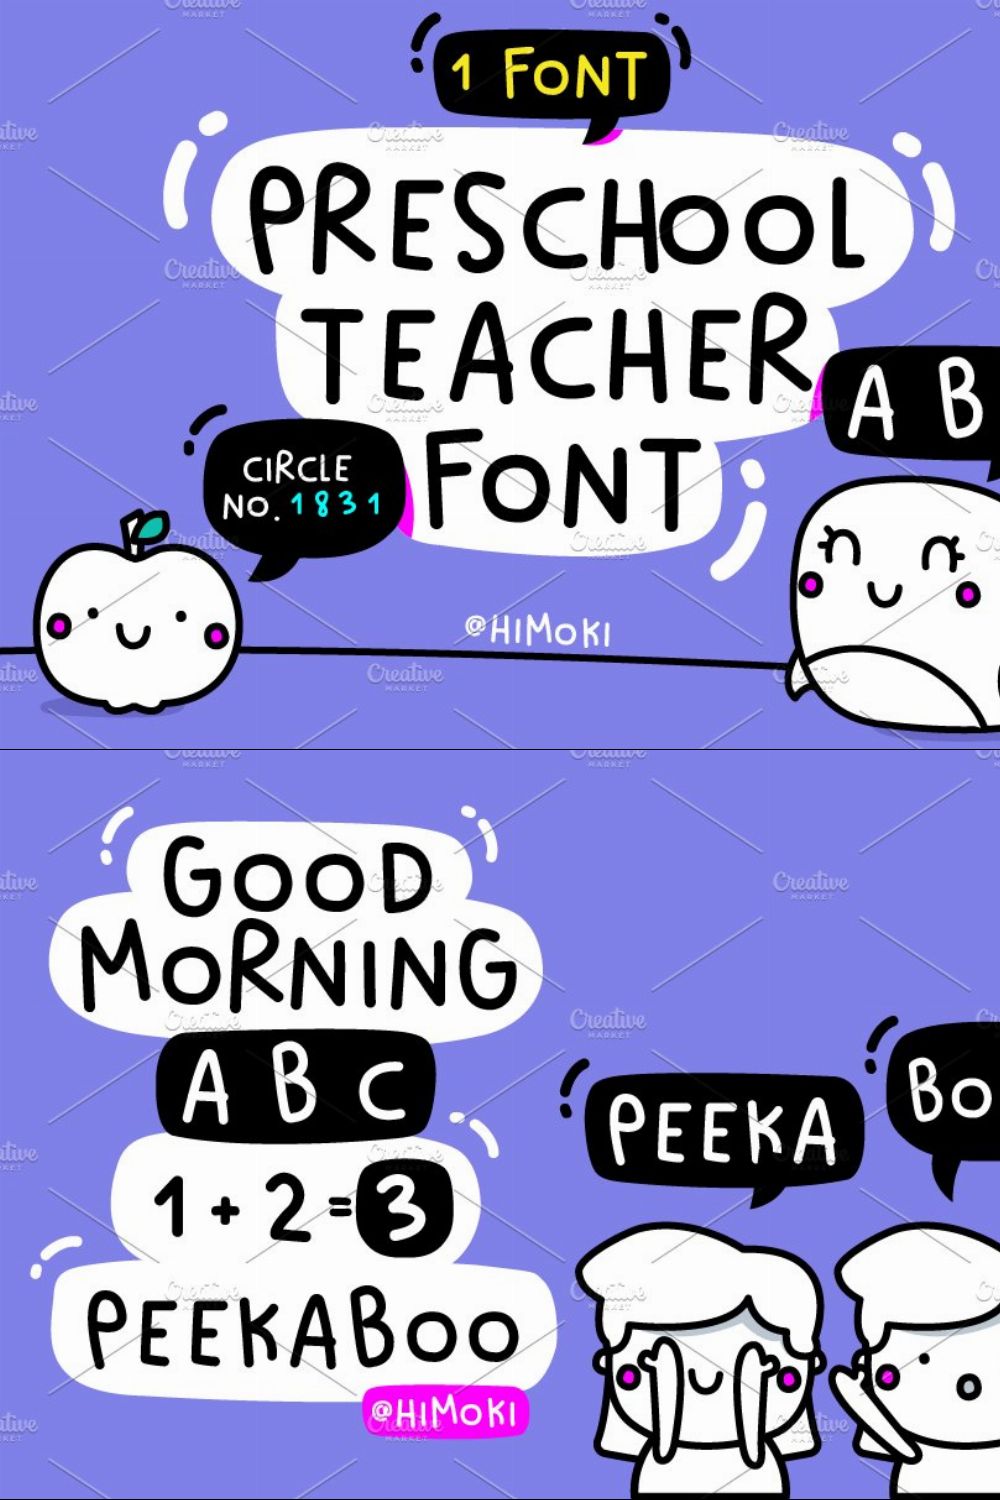 Circle.Preschool.Teacher.kids.font pinterest preview image.